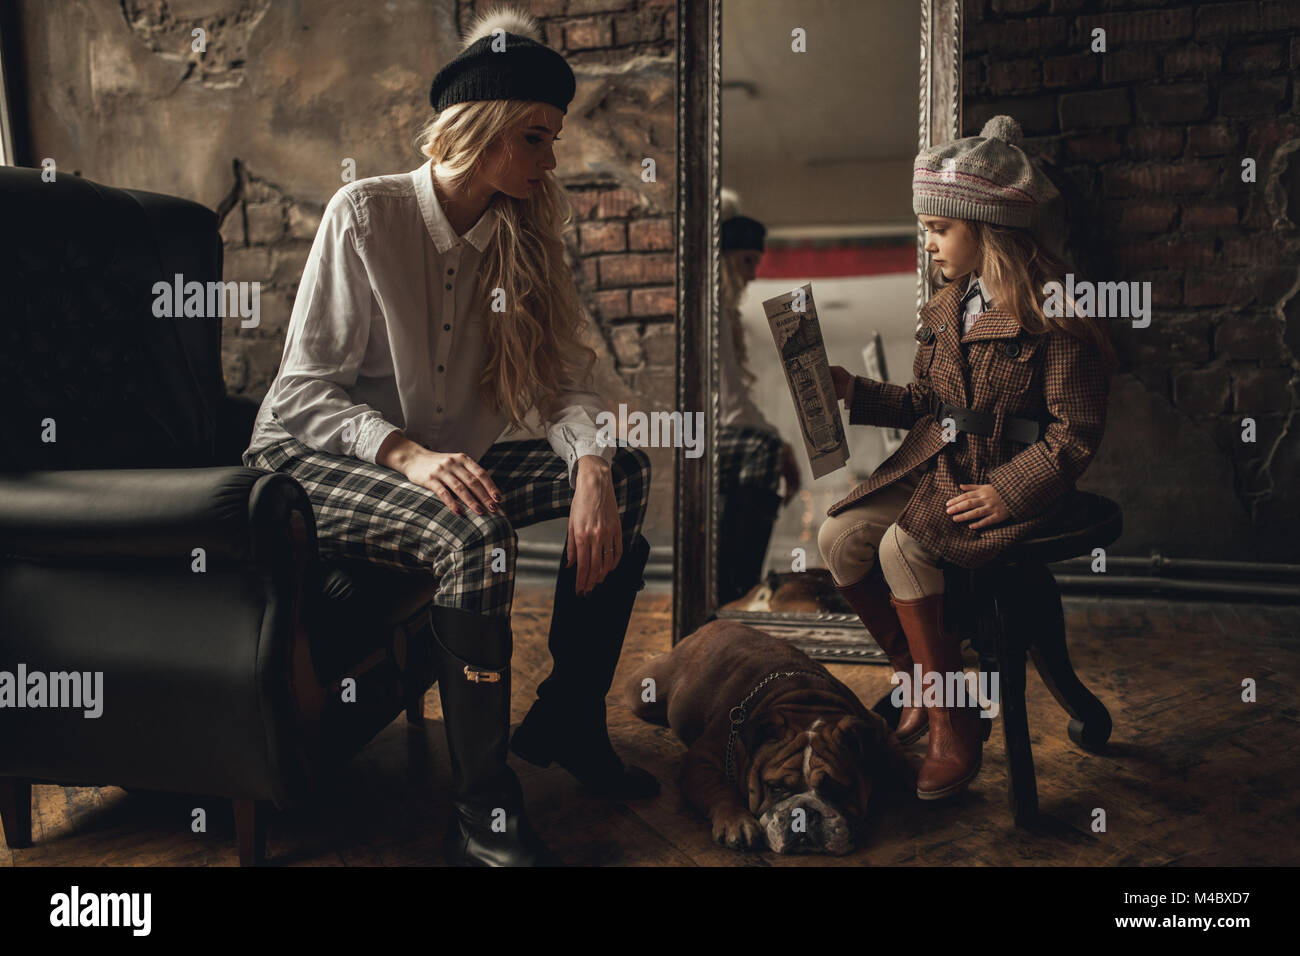 Enfant fille avec femme dans l'image de Sherlock Holmes s'asseoir dans un fauteuil et lire à côté de journal bulldog Anglais sur fond de murs en briques anciennes, miroir Banque D'Images